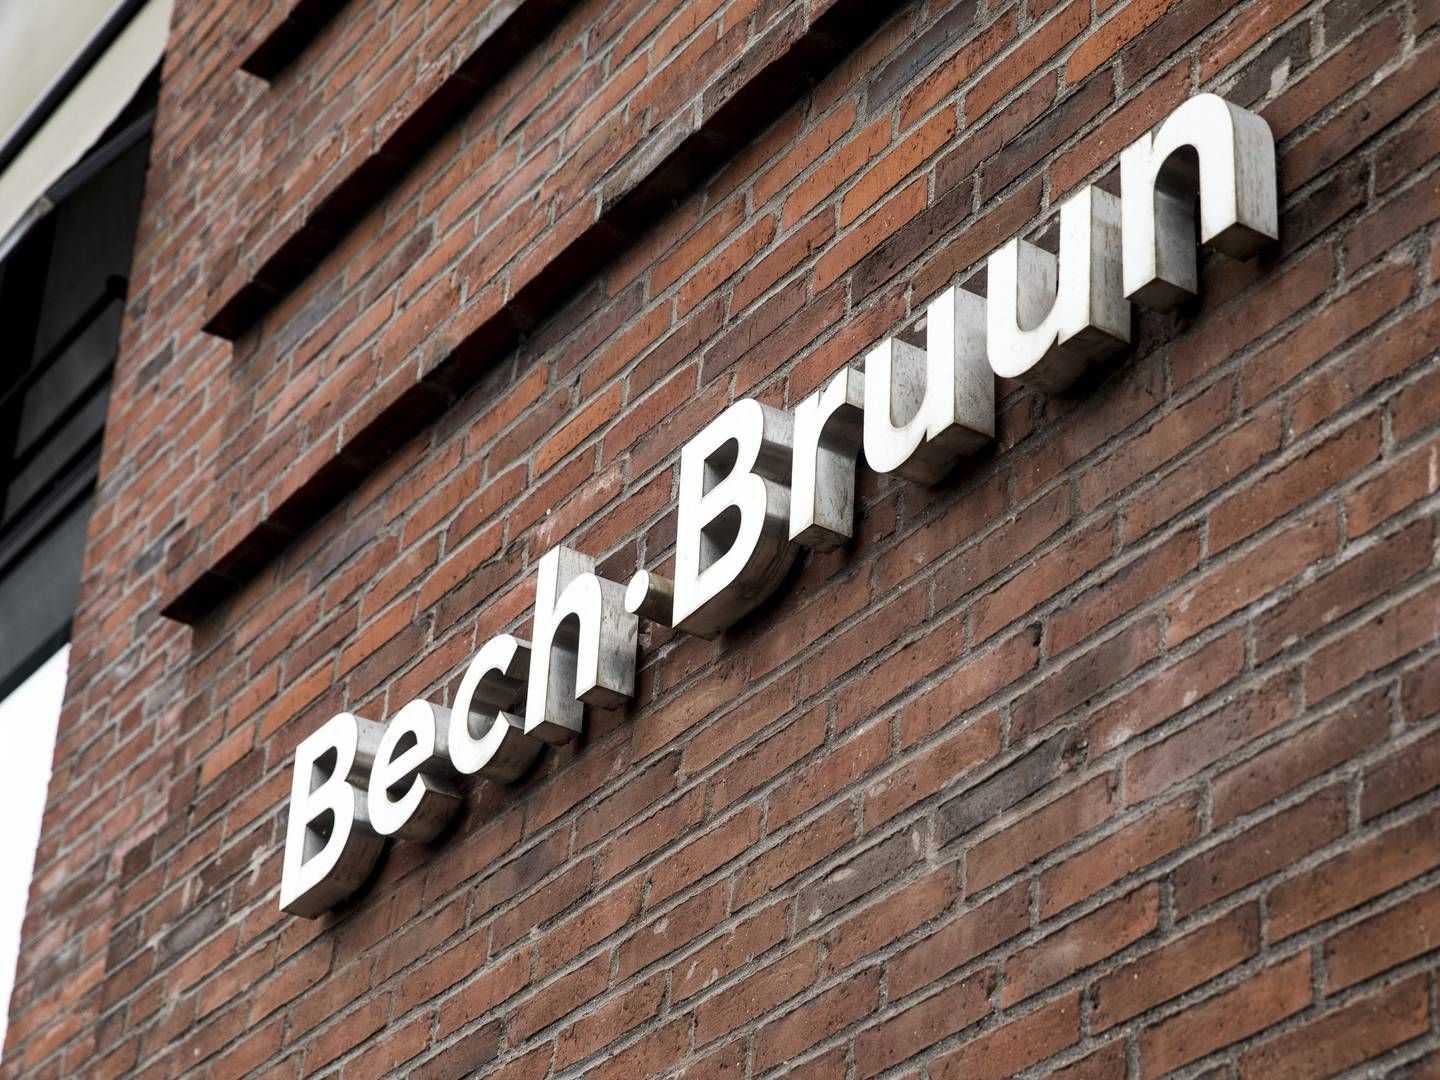 Skat har krævet knap 1,2 mia. kr. af advokatfirmaet Bech-Bruun for firmaets rådgivning af tyske North Channel Bank, som i 2019 blev dømt for bedrageri i udbyttesagen. | Foto: Nikolai Linares